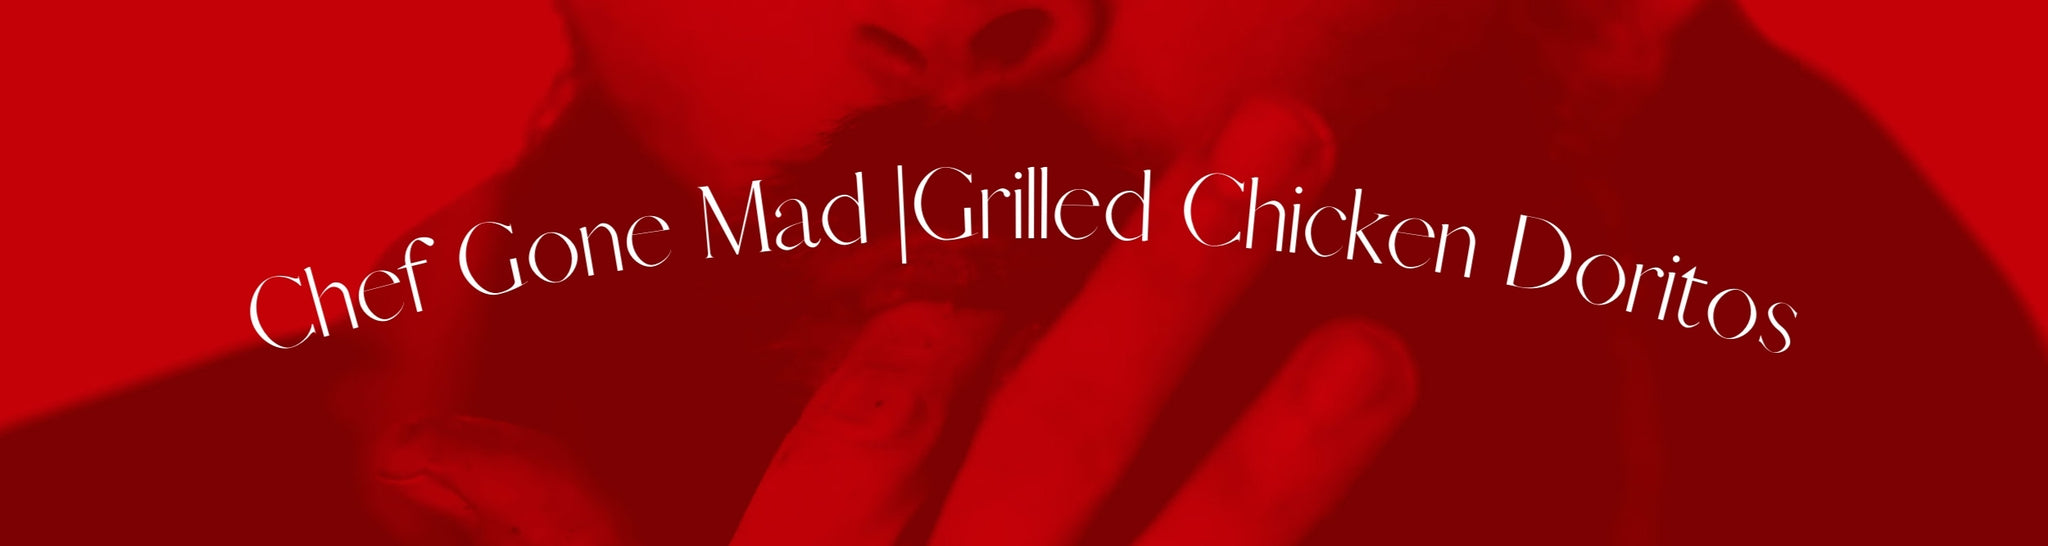 Chef Gone Mad | Grilled Chicken Doritos